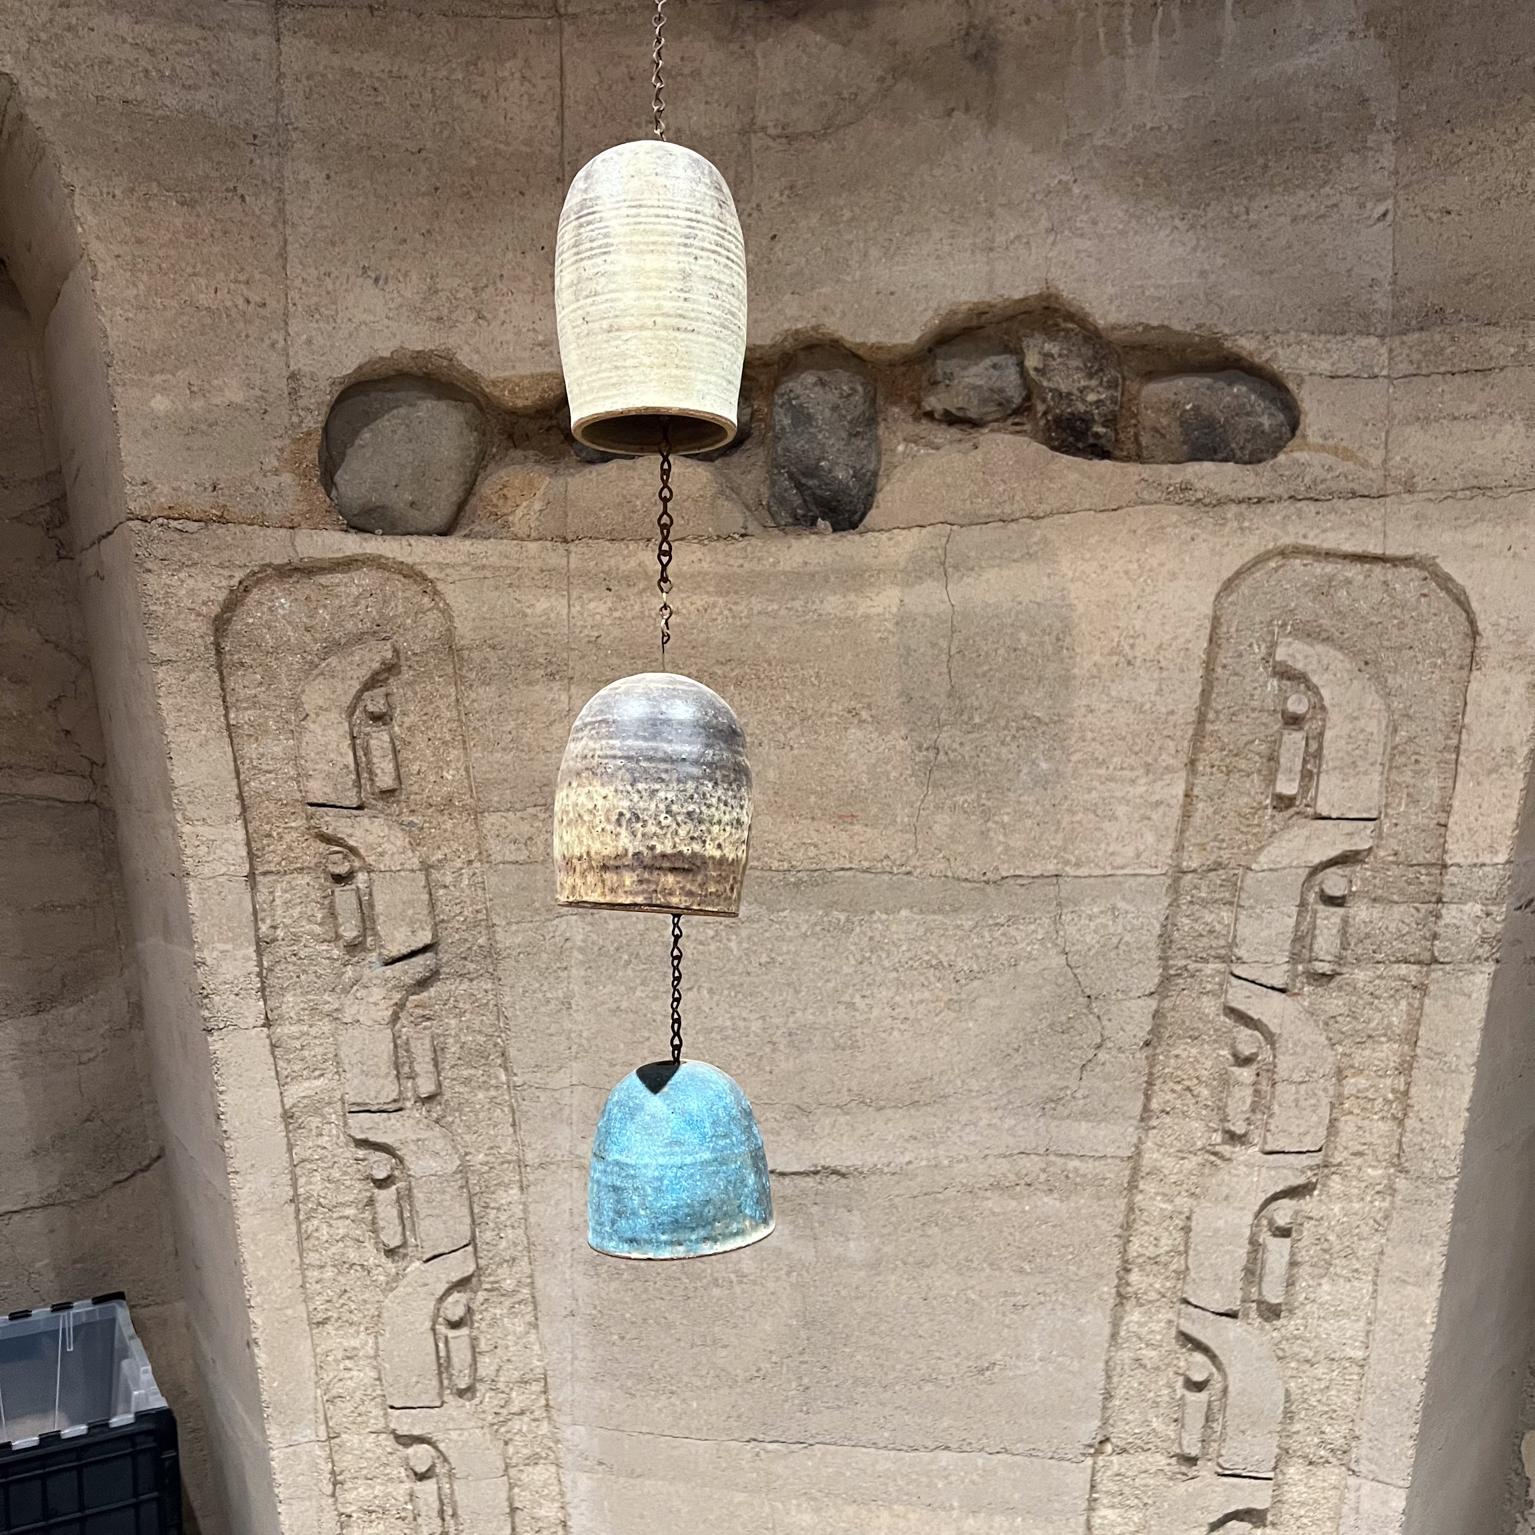 1970 Modern Modern Wind Chime Bells Colored Stoneware Pottery (carillon éolien en grès coloré)
44-60 long avec chaîne Cloche 1 6,25 x 4,25 diamètre Cloche 2 5,25 x 4,75 diamètre Cloche 3 - 4,13 h x 4,5 diamètre
Vintage original d'occasion, état